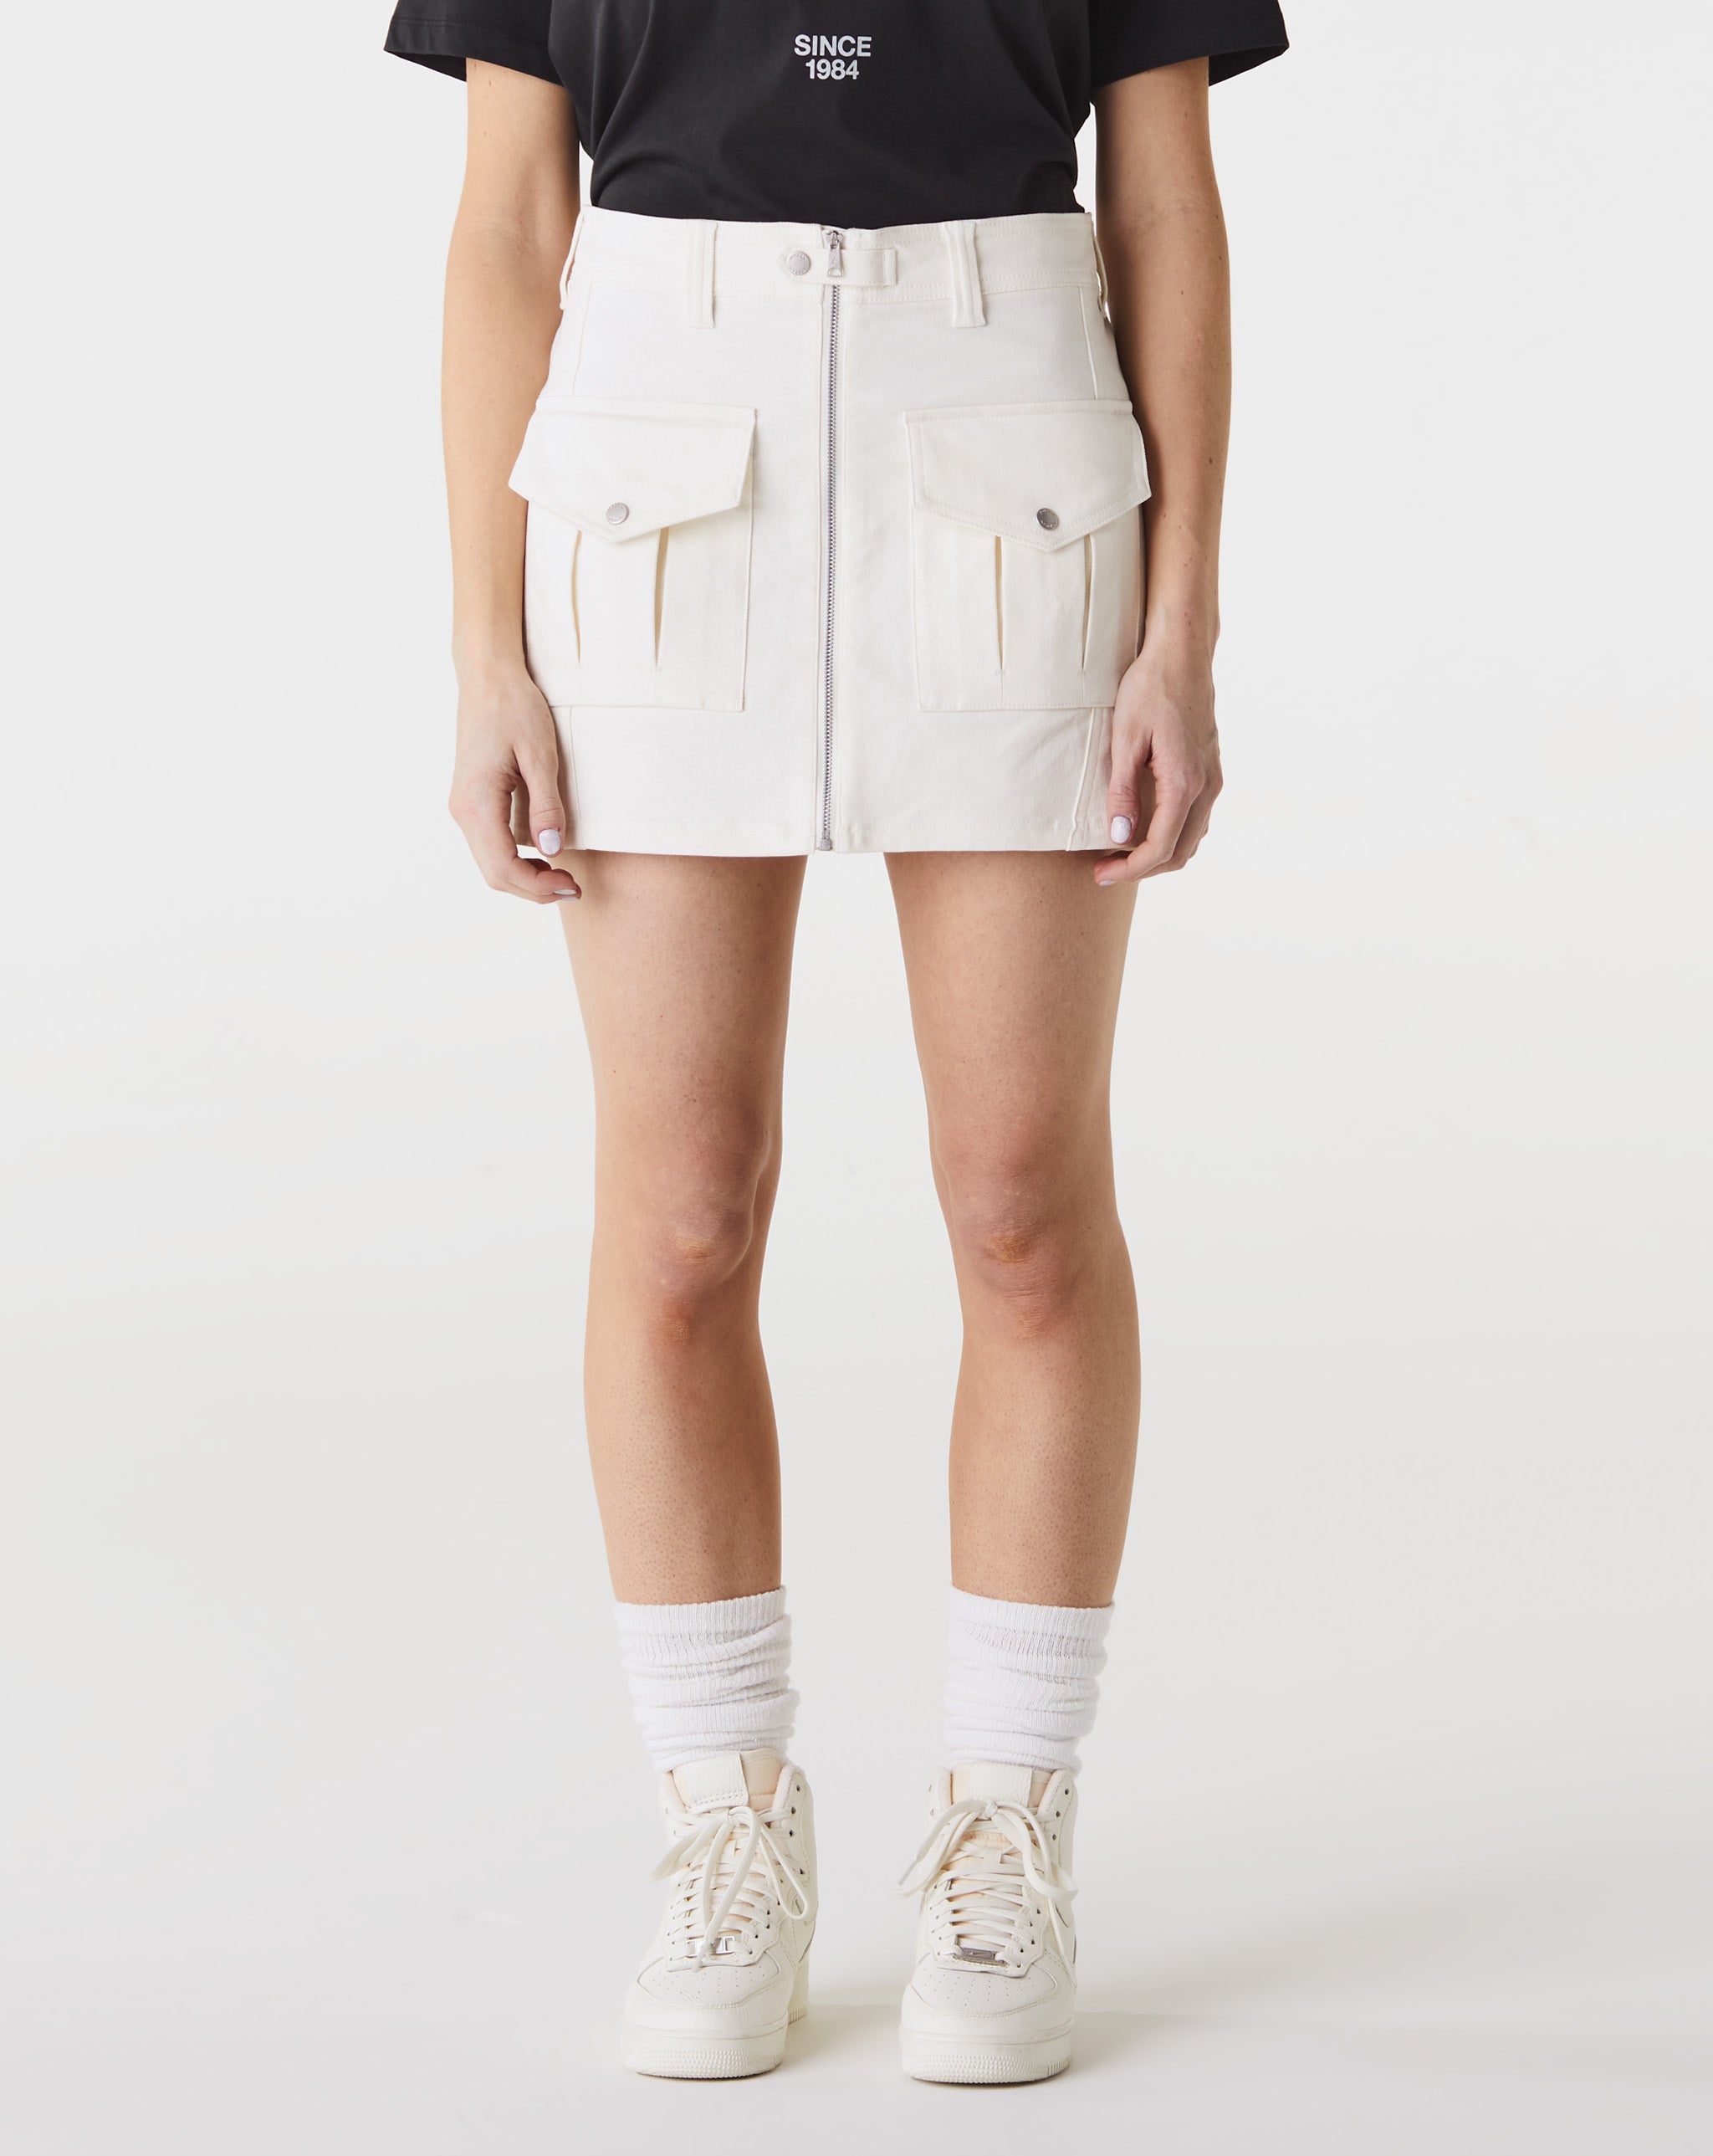 Air Jordan Women's Utility Skirt  - Cheap Atelier-lumieres Jordan outlet